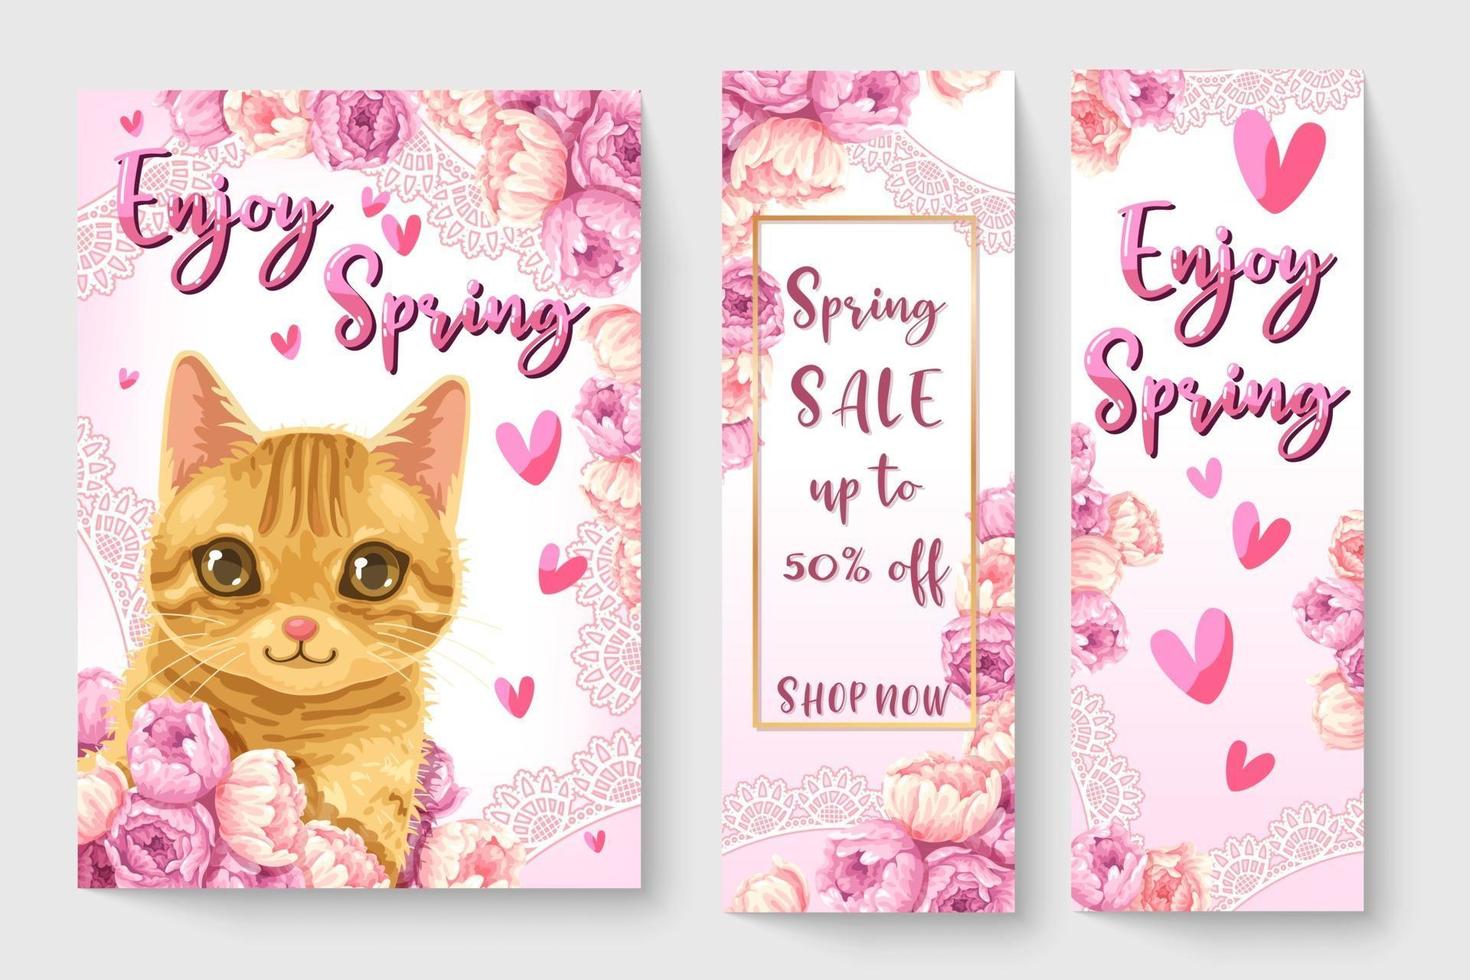 schattige kleine kat met bloemen in lente thema illustratie voor kinderen mode kunstwerken, kinderboeken, prenten, t-shirt afbeelding. vector